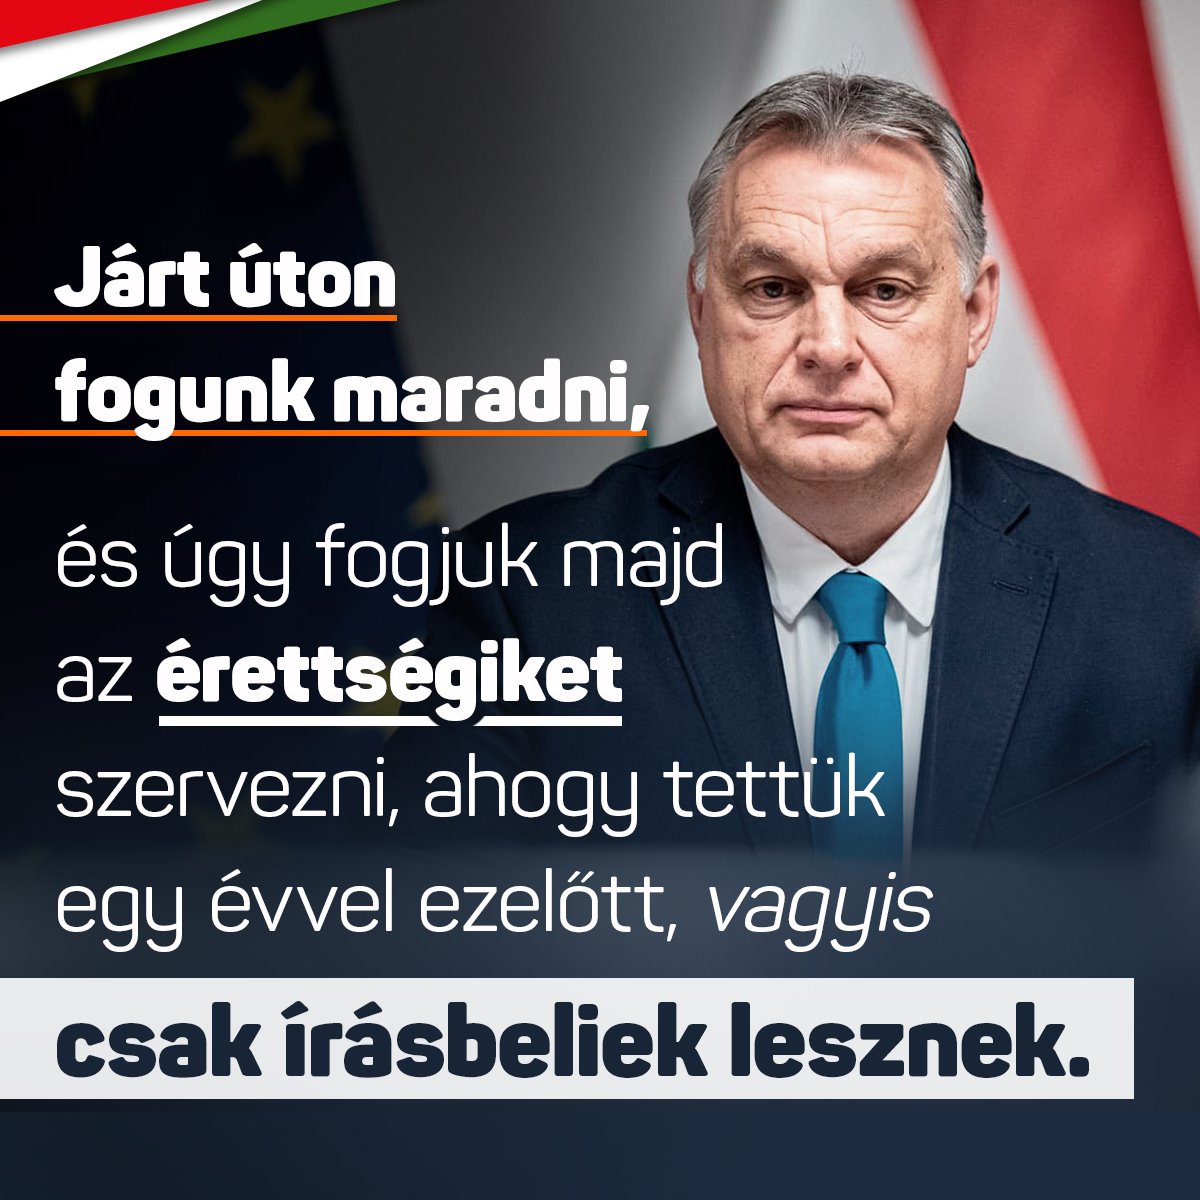 Orbán Viktor – Járt úton fogunk maradni, és úgy fogjuk majd az érettségiket szervezni, ahogy tettük egy évvel ezelőtt, vagyis csak írásbeliek lesznek.